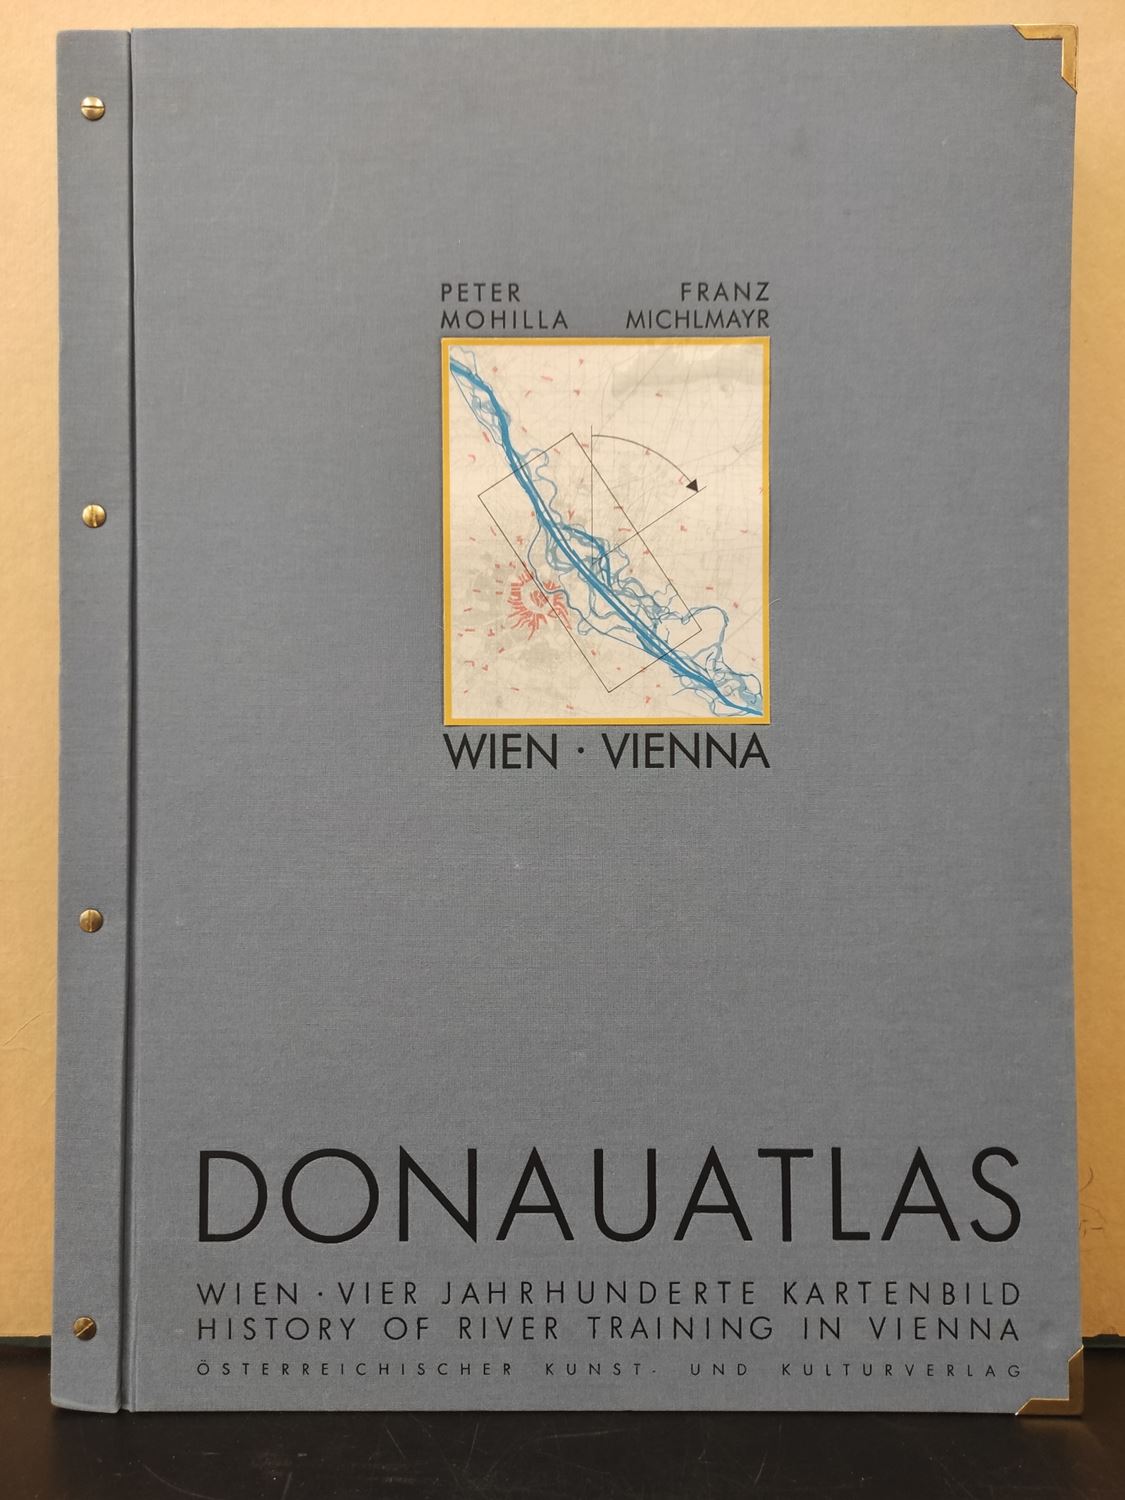 Donauatlas Wien / Geschichte der Donauregulierung auf Karten und Plänen aus vier Jahrhunderten - Mohilla, Peter & Franz Michlmayr